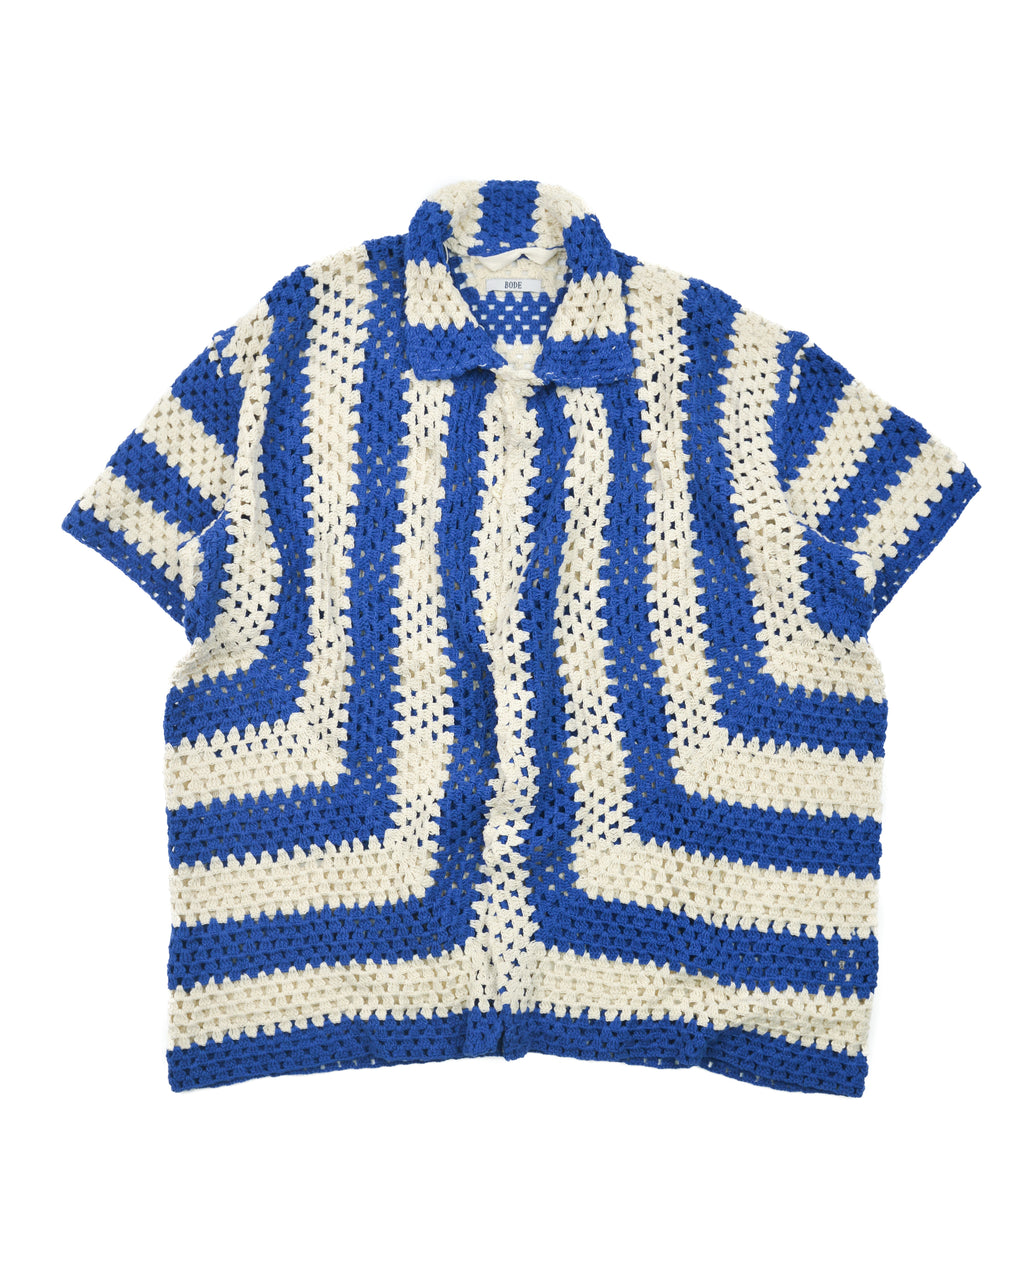 Crochet Shirt